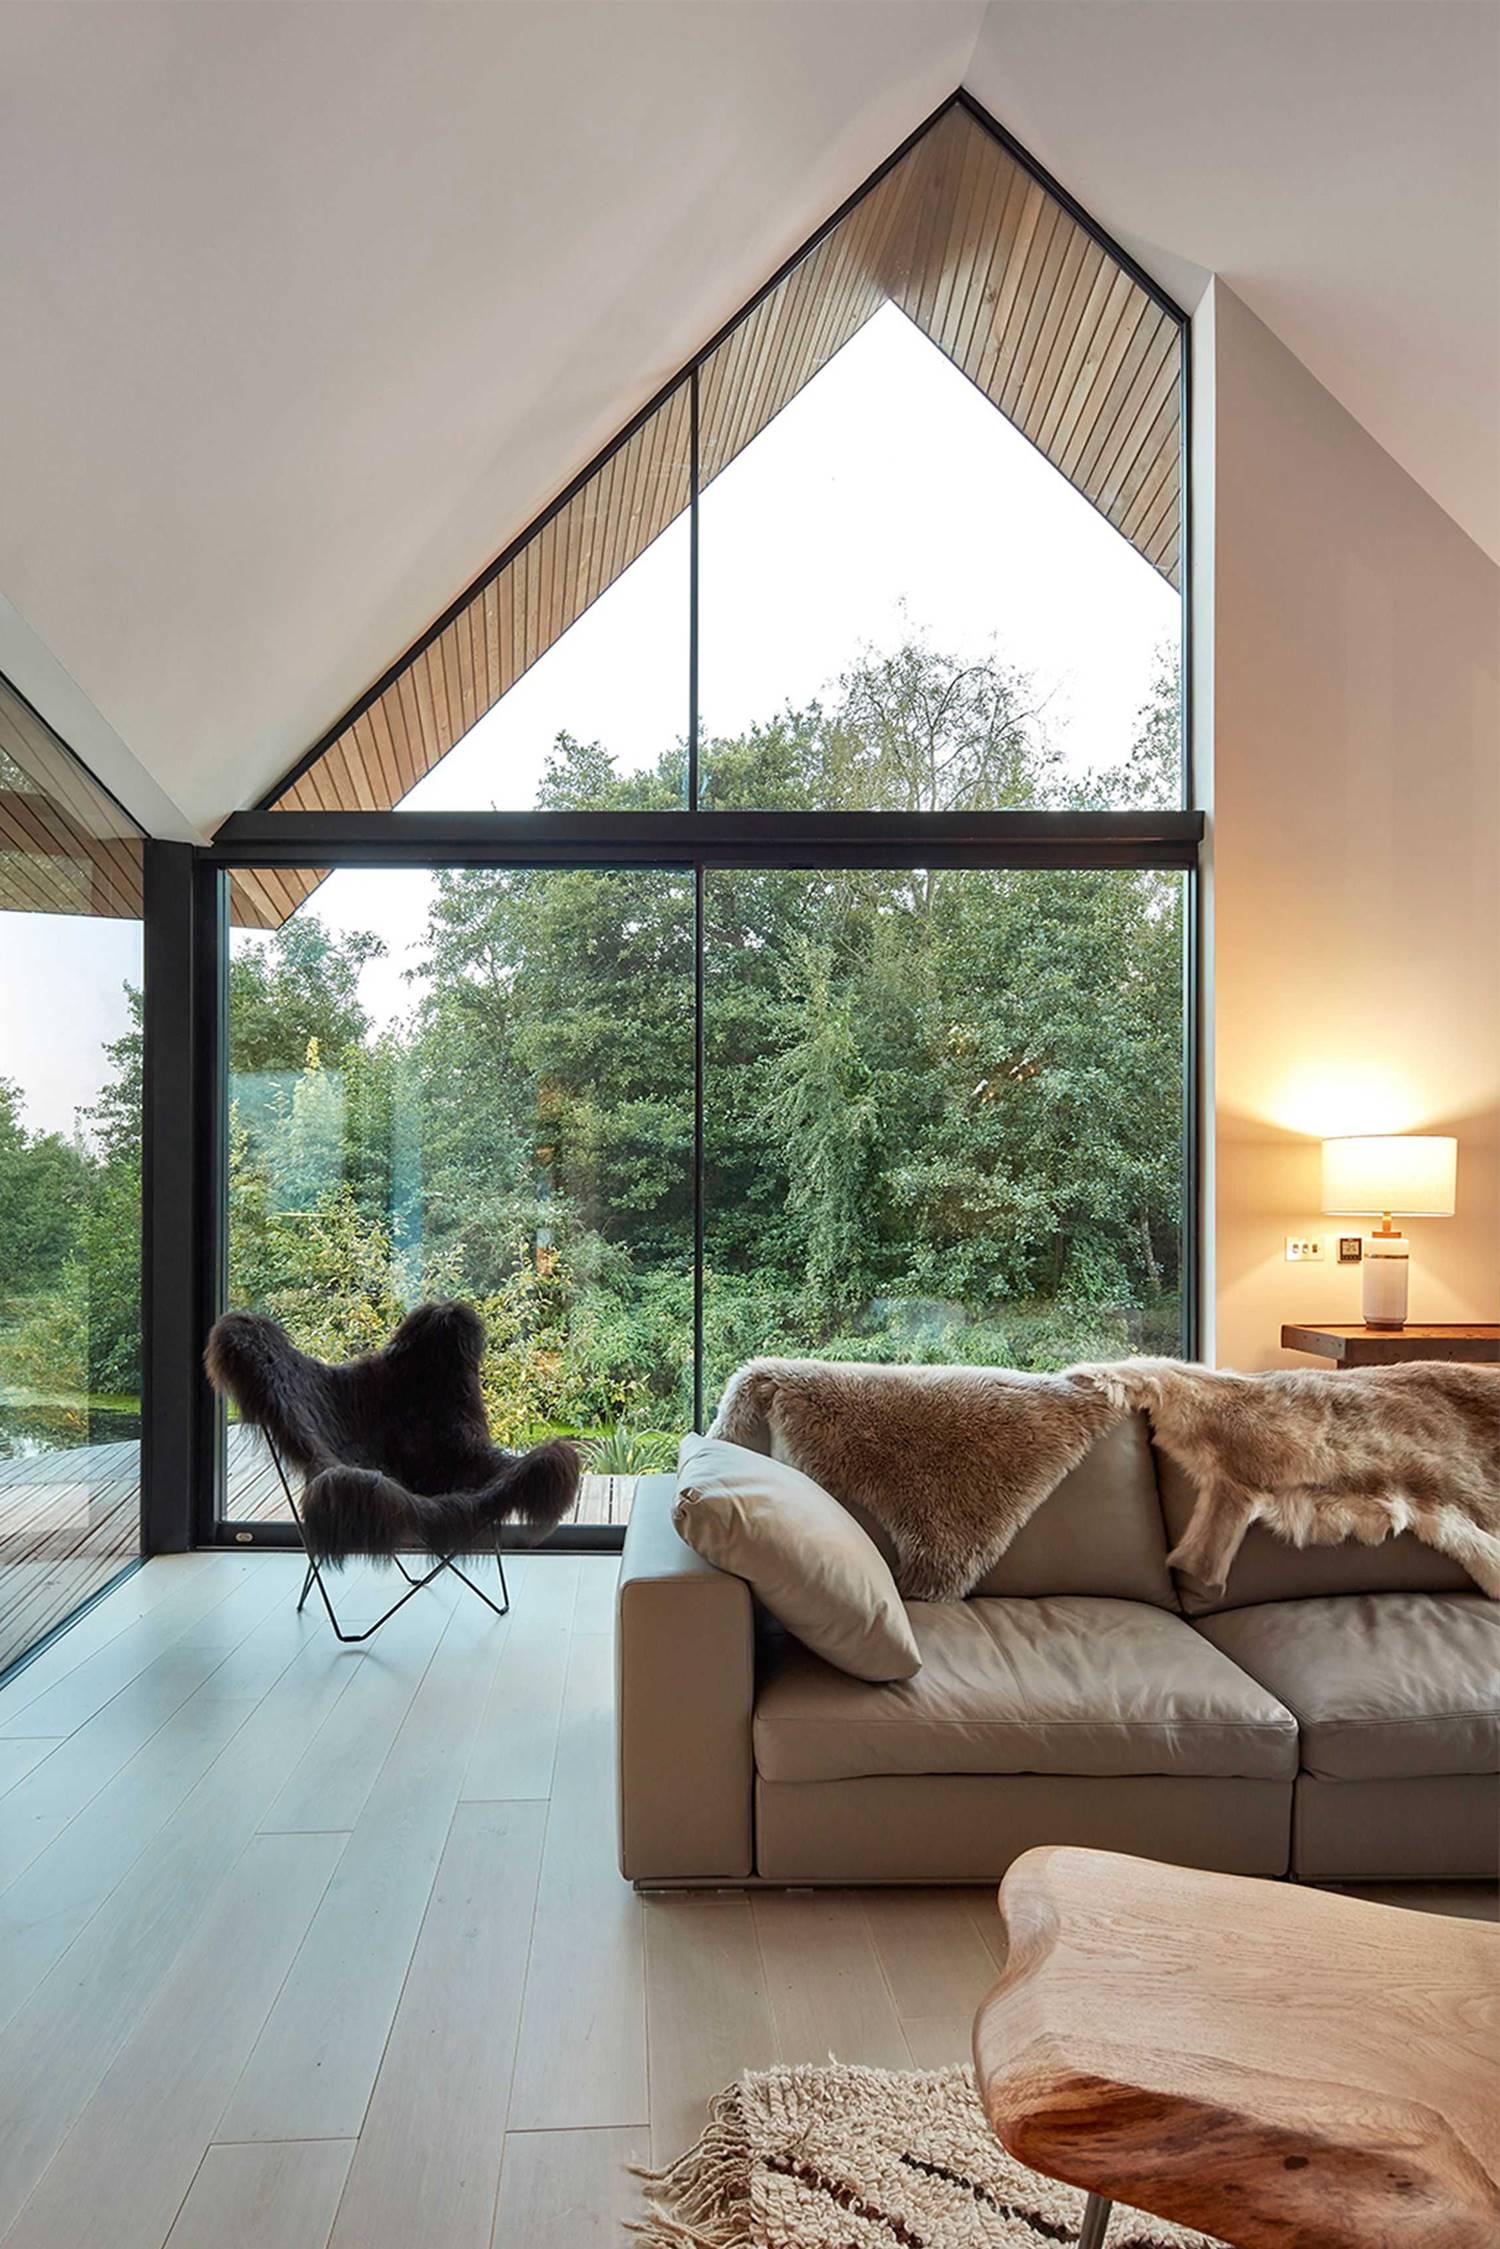 Contar con ventanas sin saltos térmicos y con cristales aislantes será indispensable para garantizar el correcto confort de nuestras habitaciones.